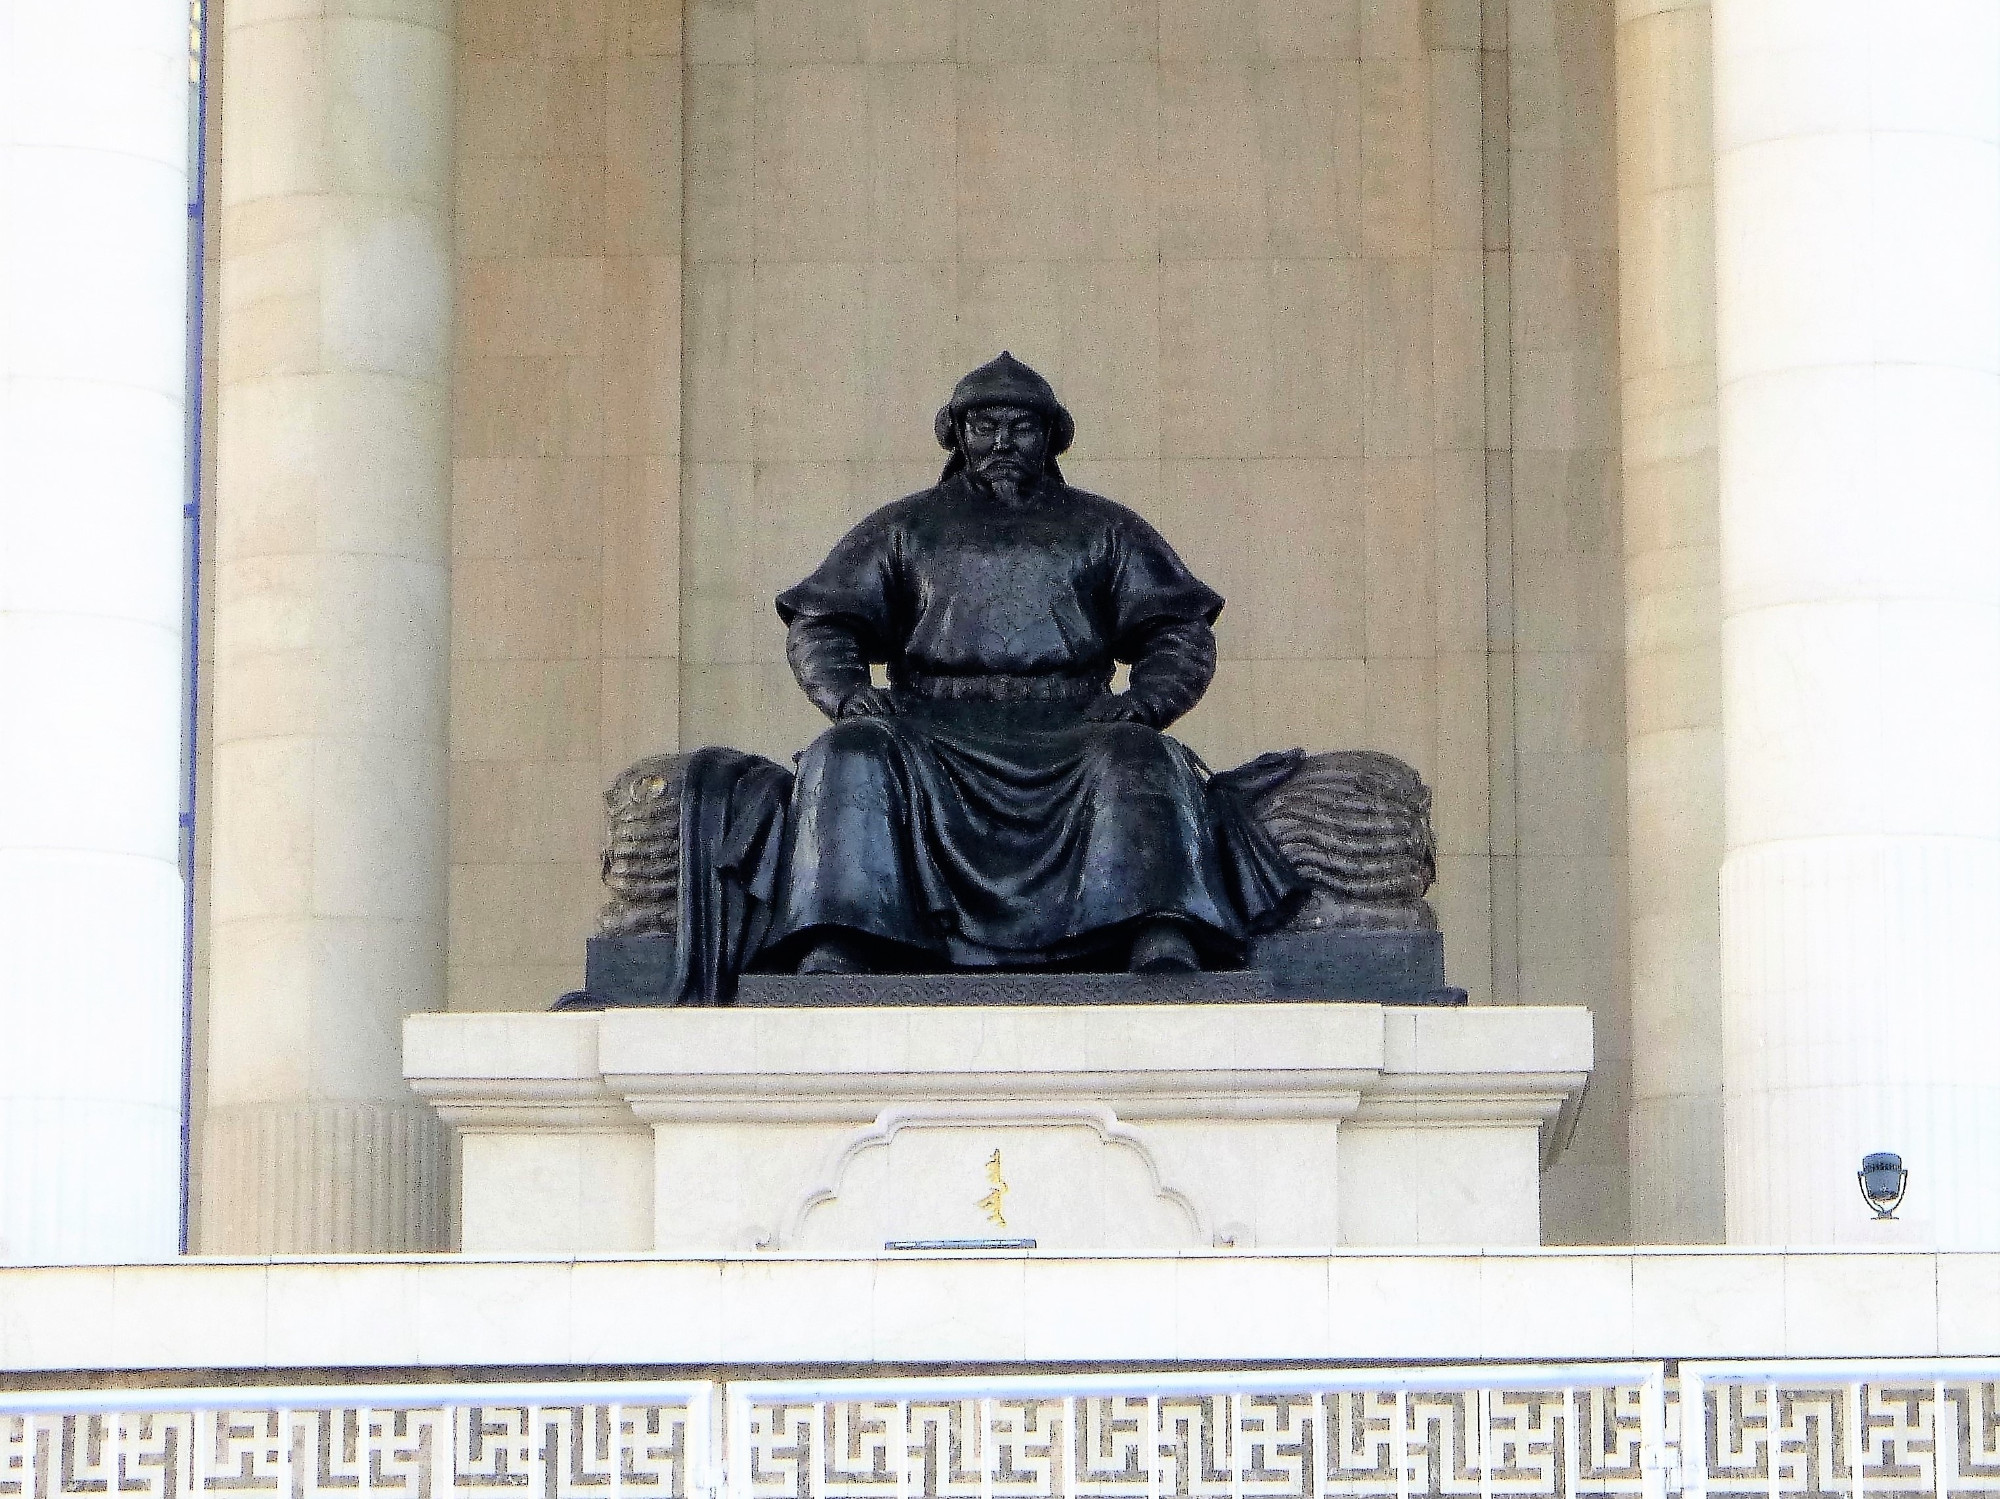 Ögedei Khan Statue